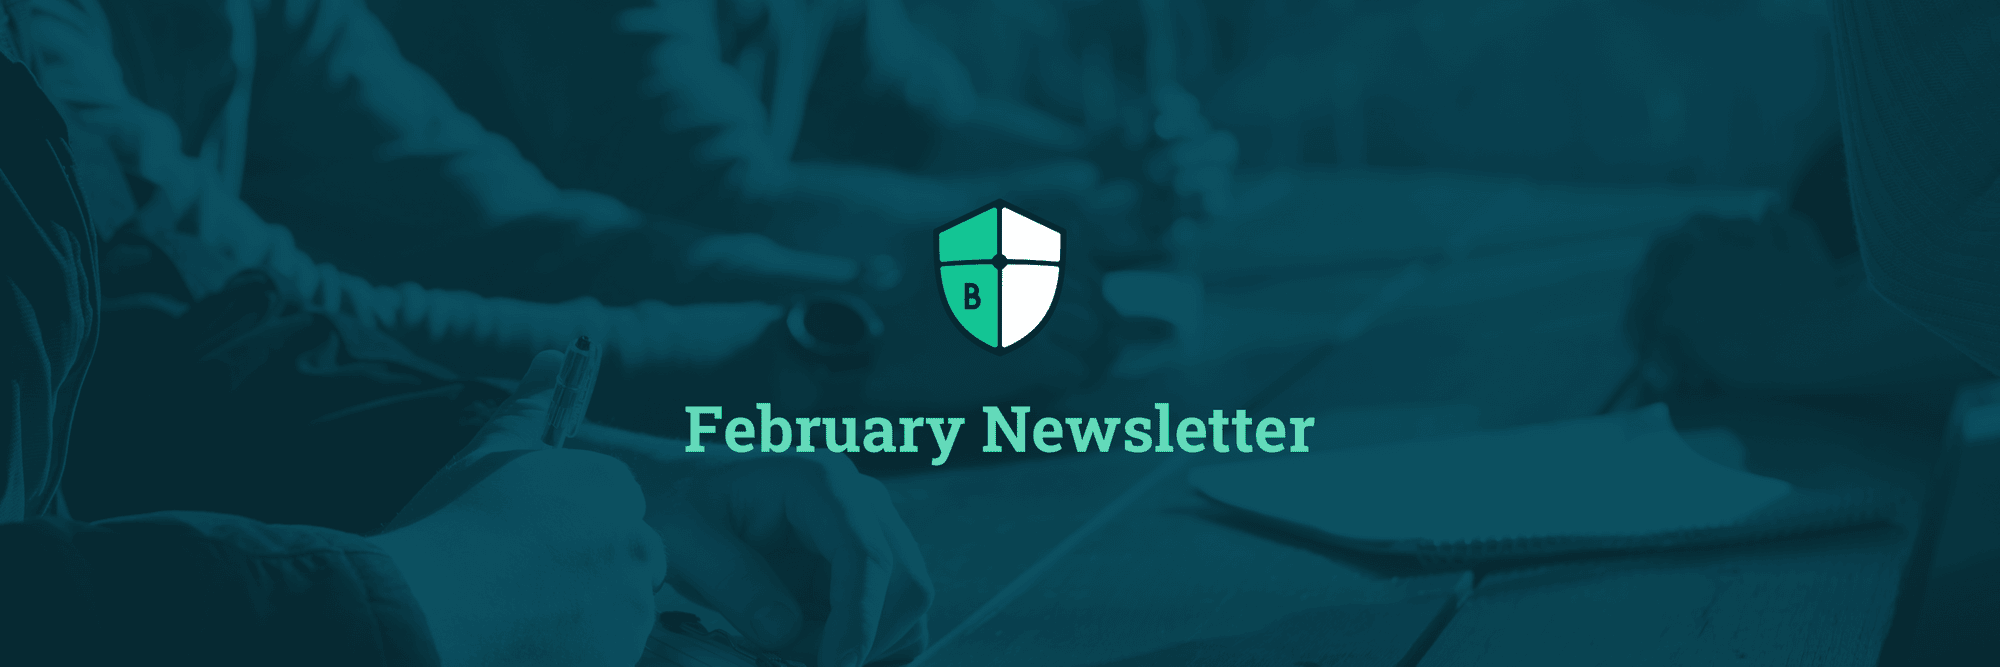 February Newsletter Header Image